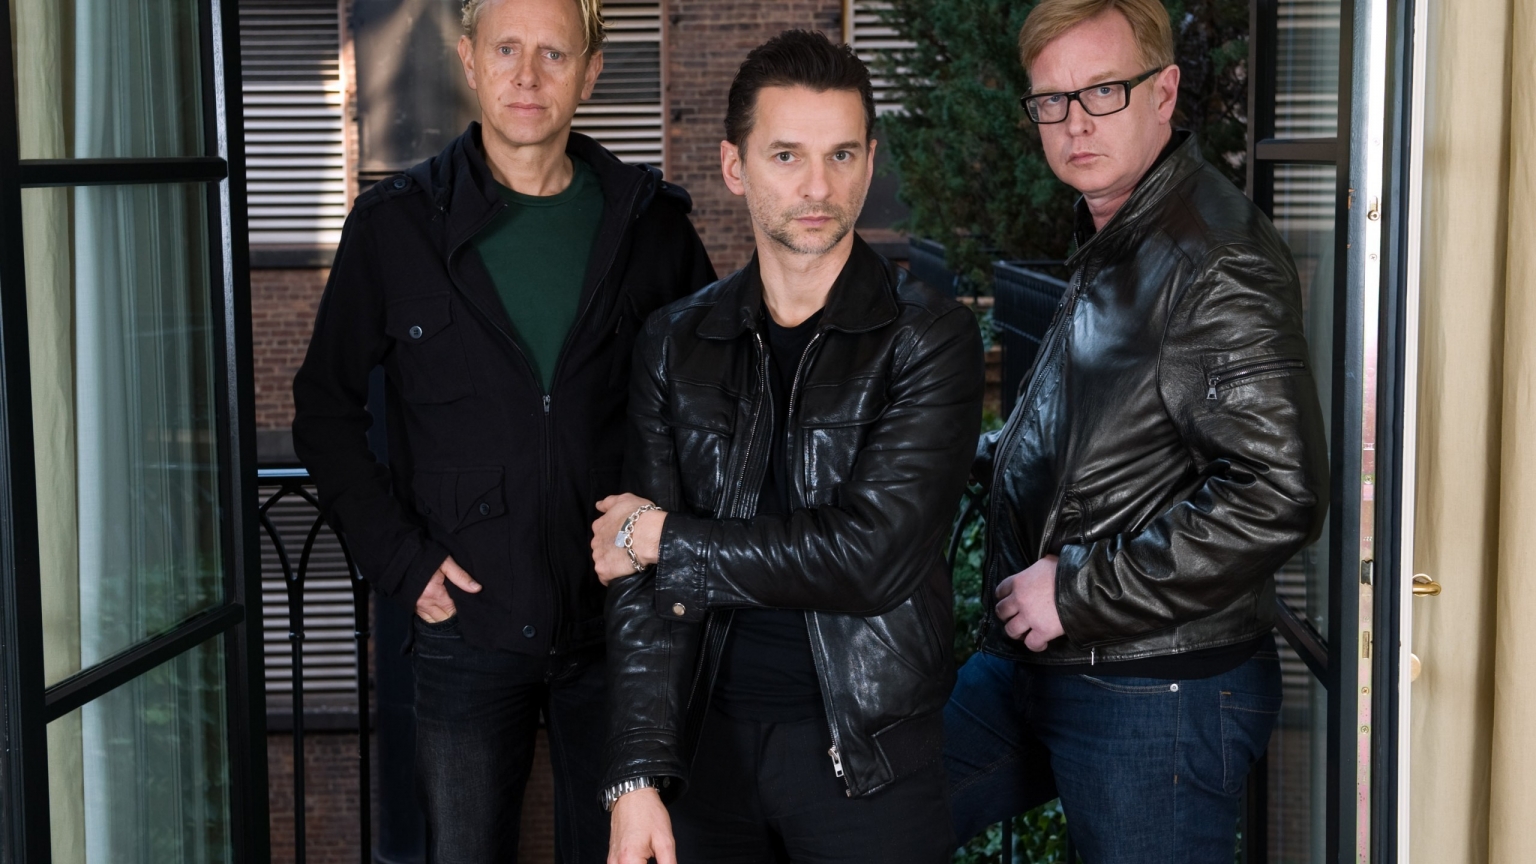 Depeche Mode Members Poster for 1536 x 864 HDTV resolution